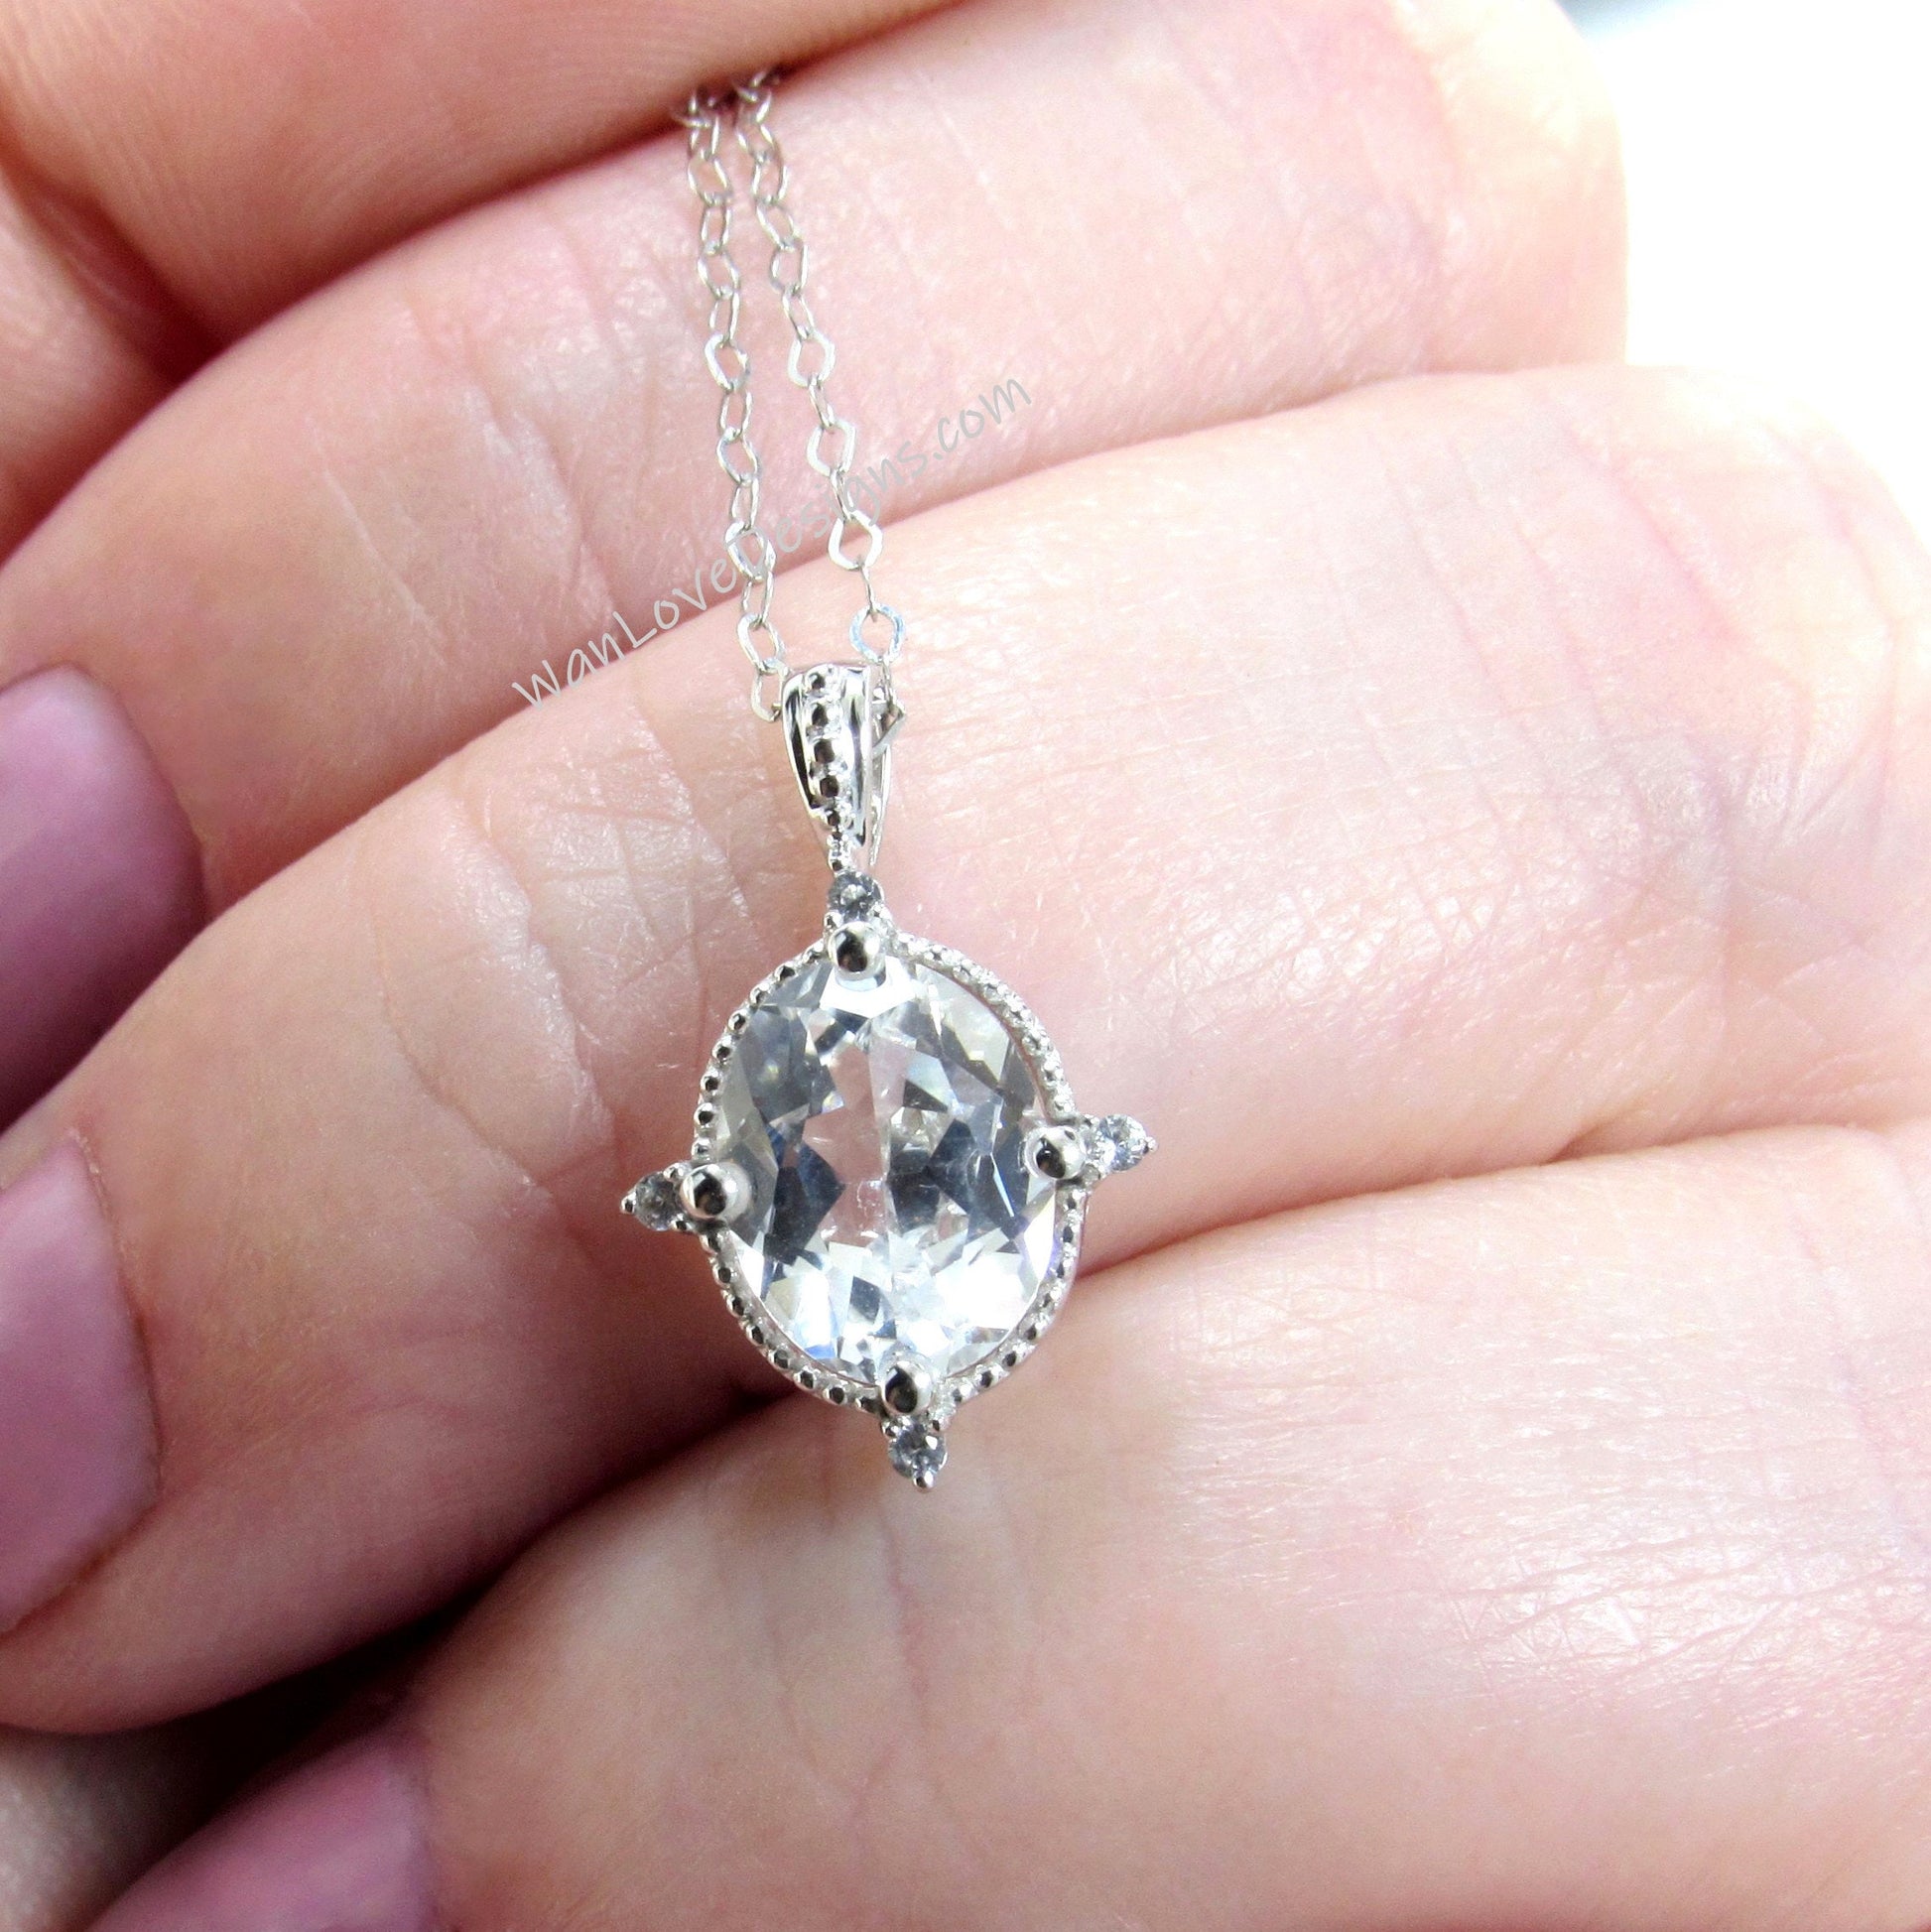 Vintage oval cut White Sapphire pendant white gold milgrain necklace charm cluster necklace compass prong art deco pendant promise necklace